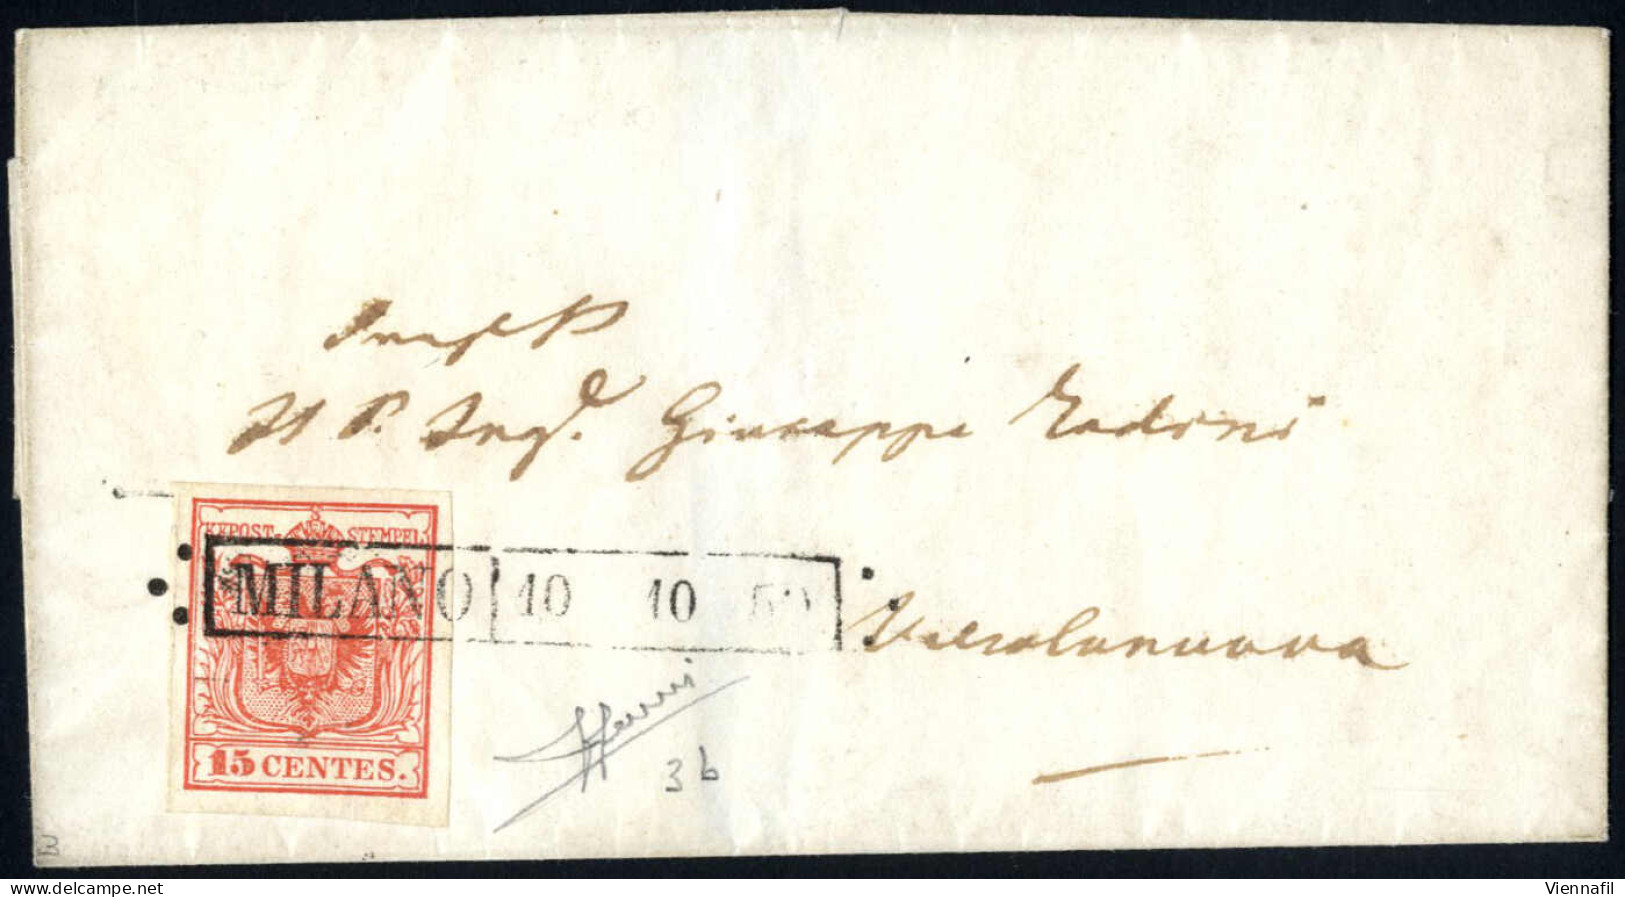 cover 1850, lotto di 15 lettere ed un frontespizio, di cui 14 affrancata con 15 cent. rosso, una con due esemplari del 1